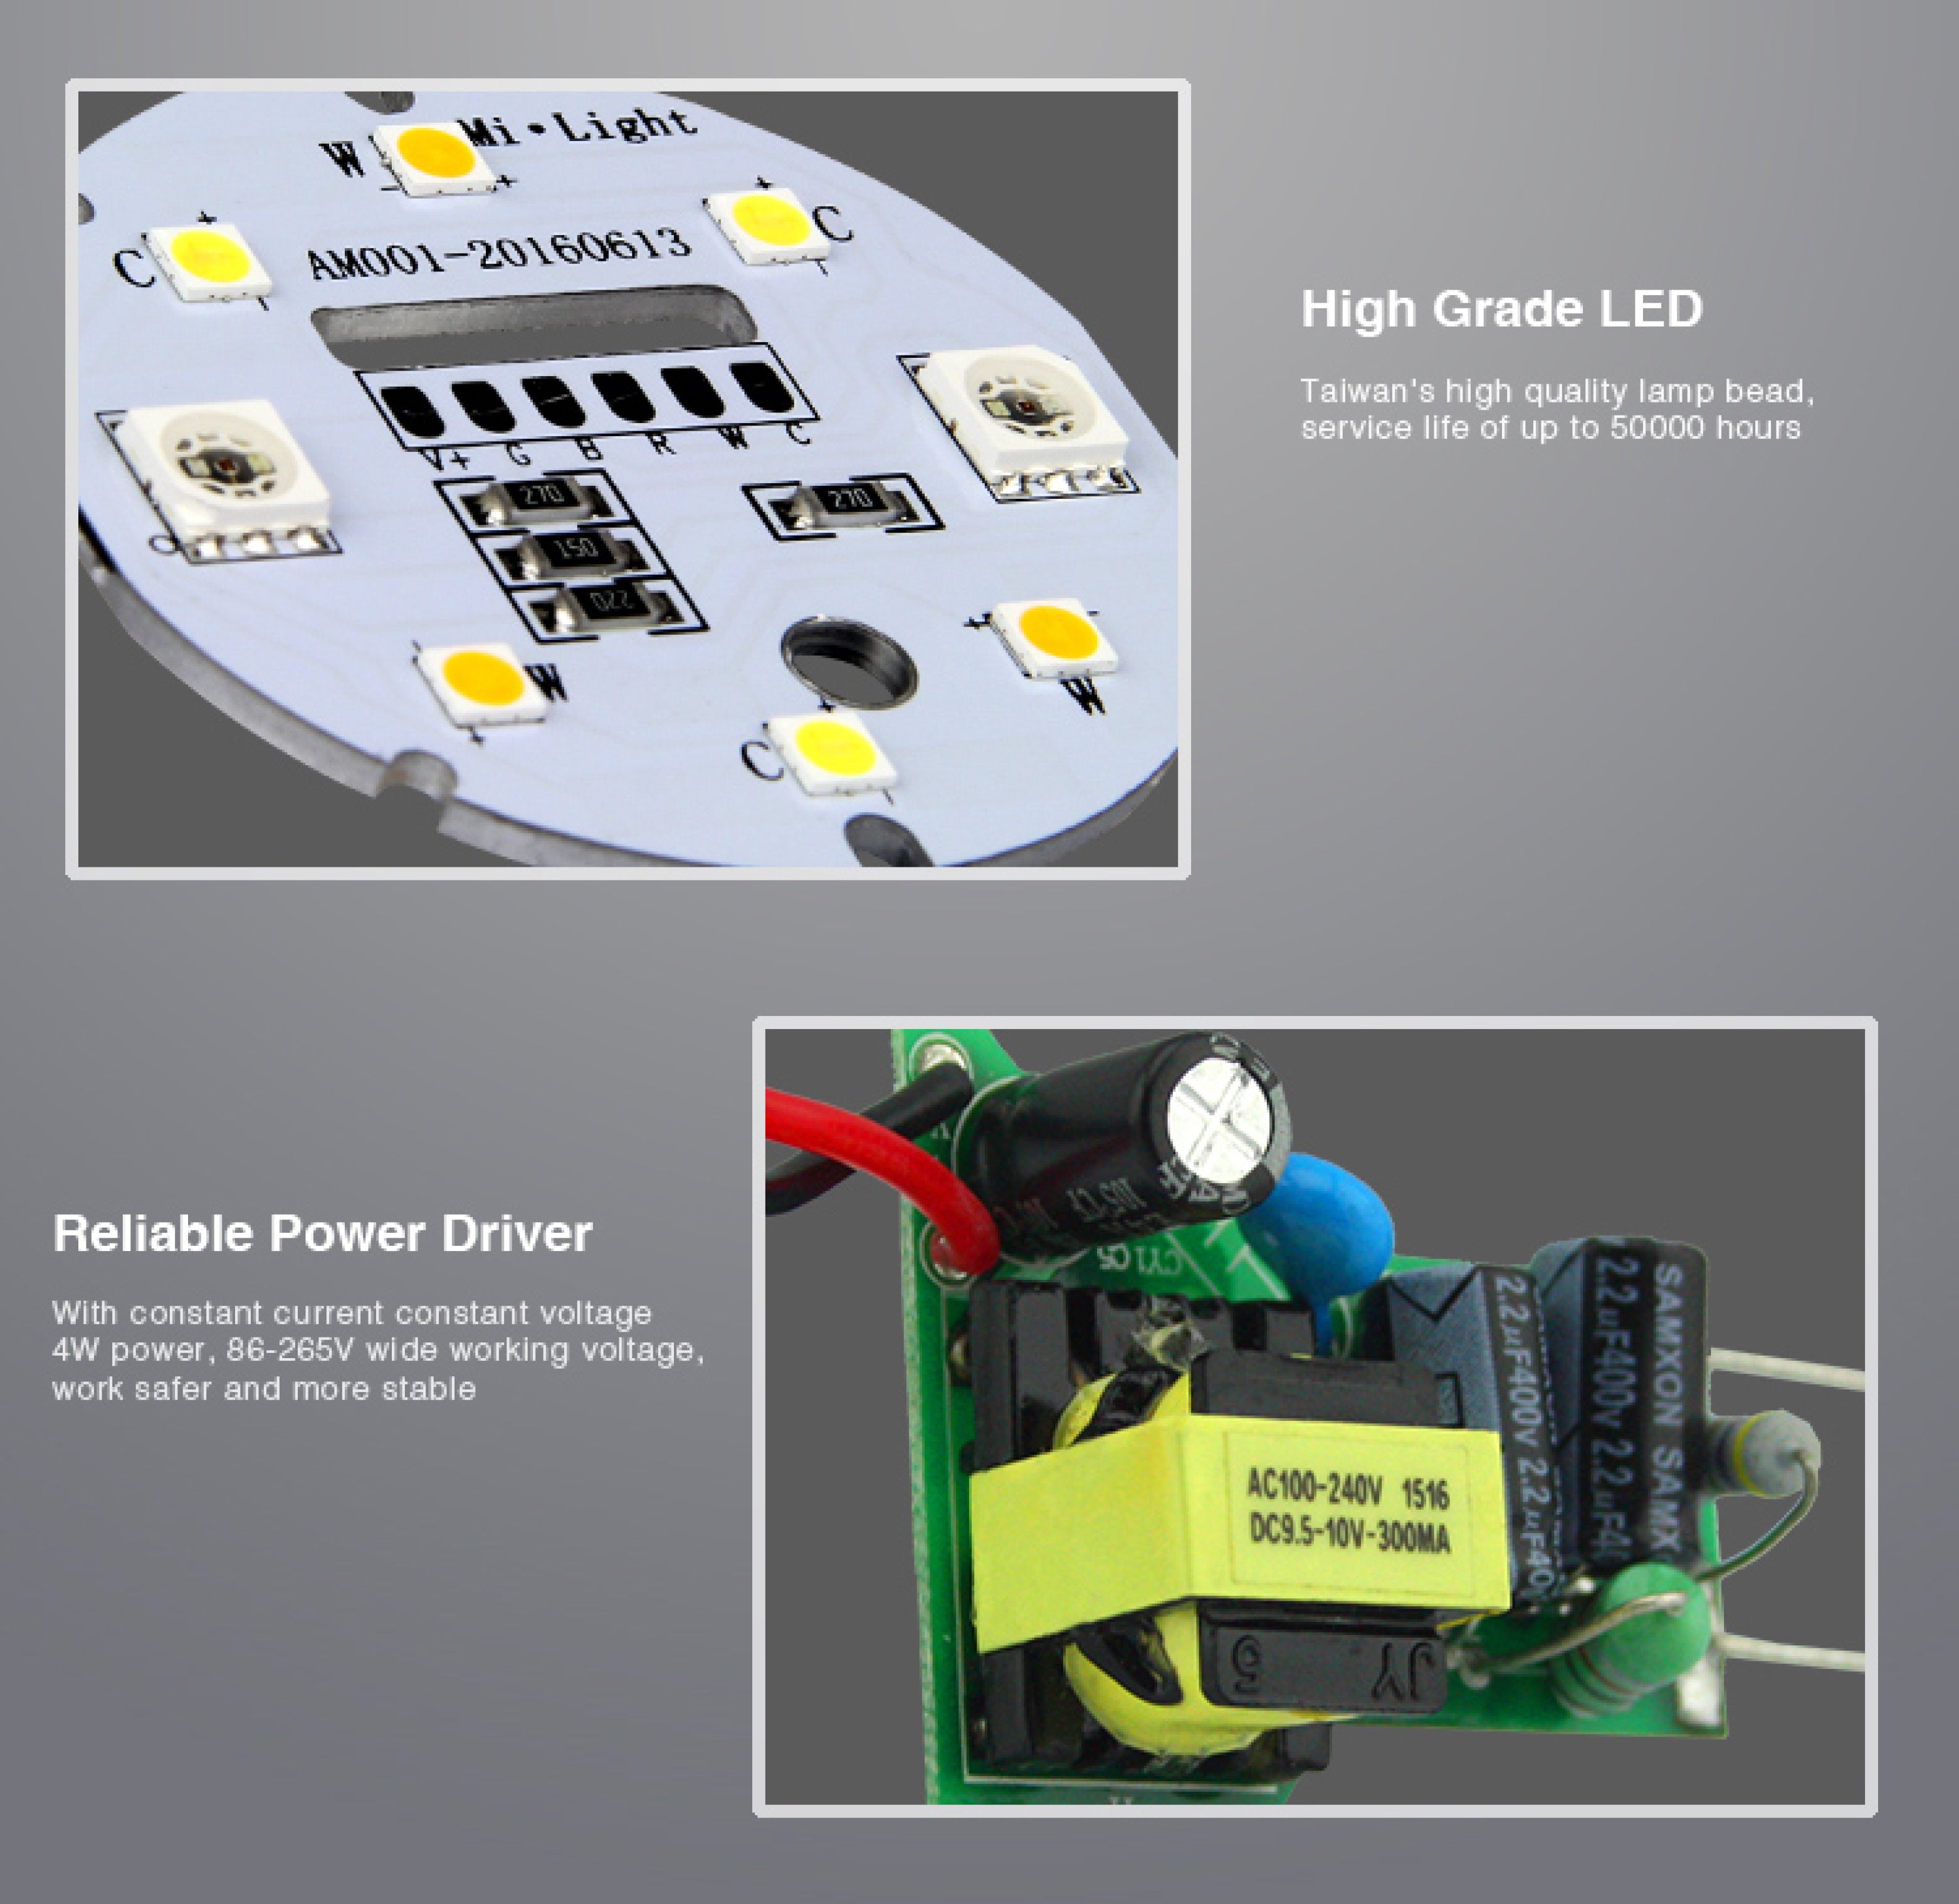 2.4GHz RF Remote-able 4W RGB+CCT LED GU10 Bulb